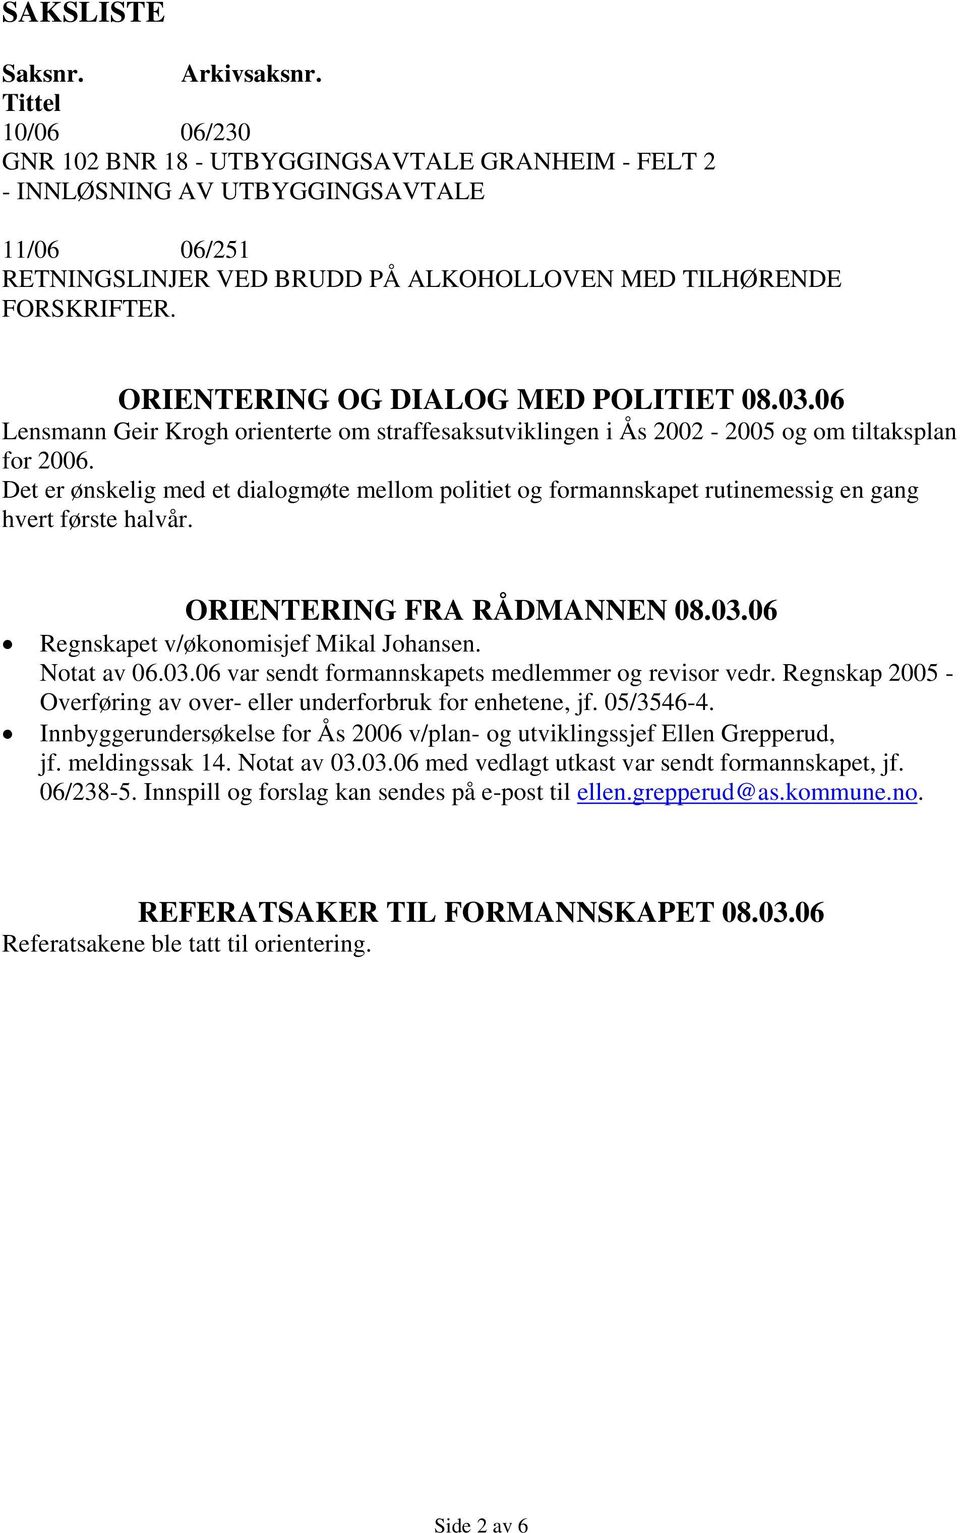 ORIENTERING OG DIALOG MED POLITIET 08.03.06 Lensmann Geir Krogh orienterte om straffesaksutviklingen i Ås 2002-2005 og om tiltaksplan for 2006.